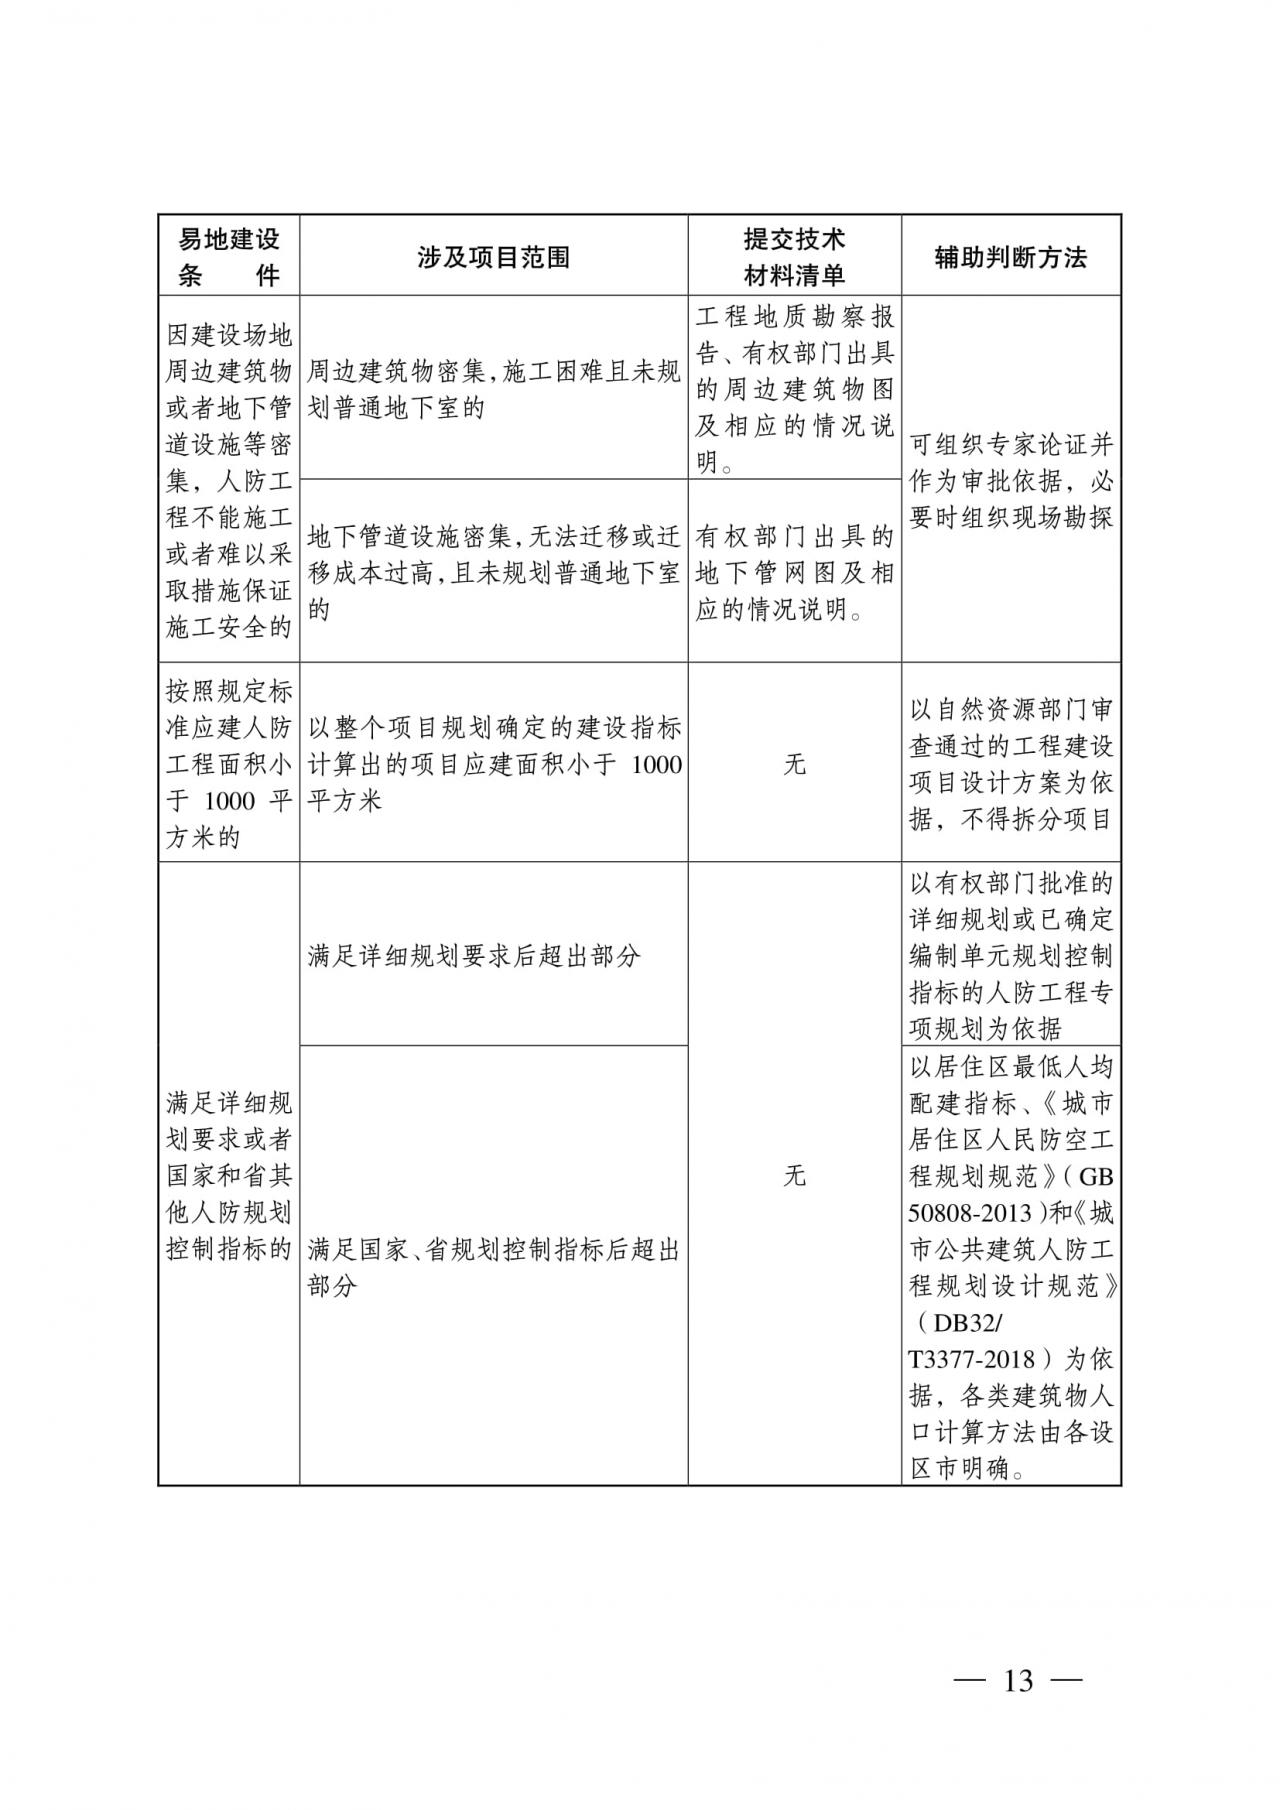 《江苏省防空地下室建设实施细则》文件